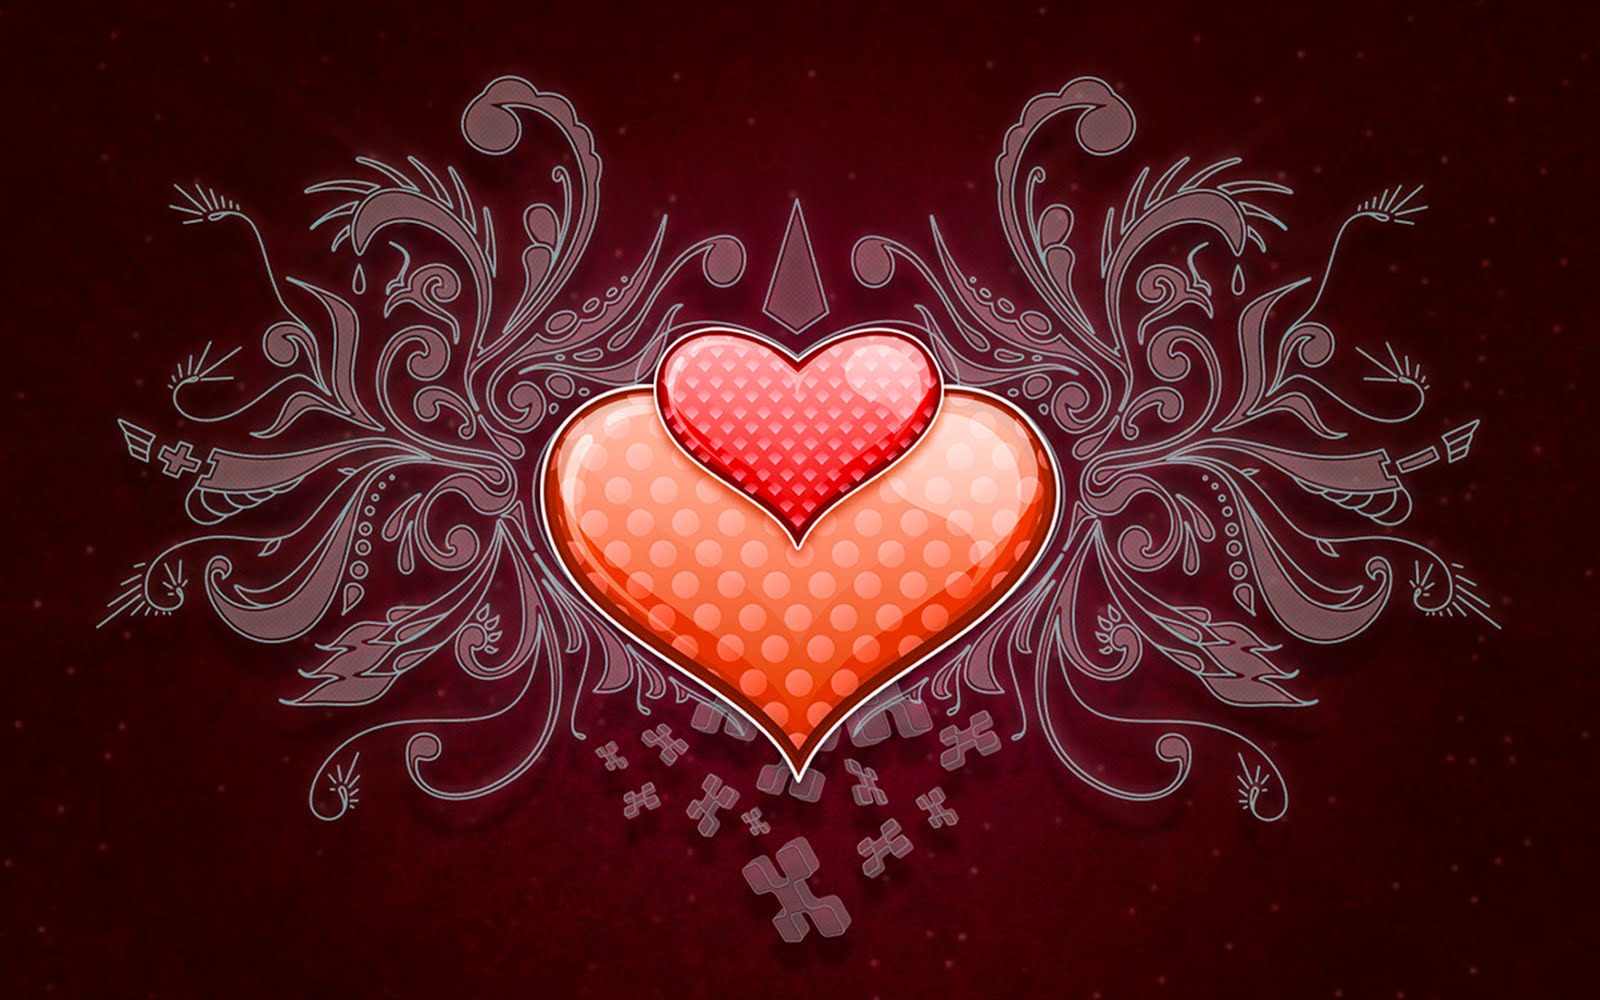 hearts wallpaper hd